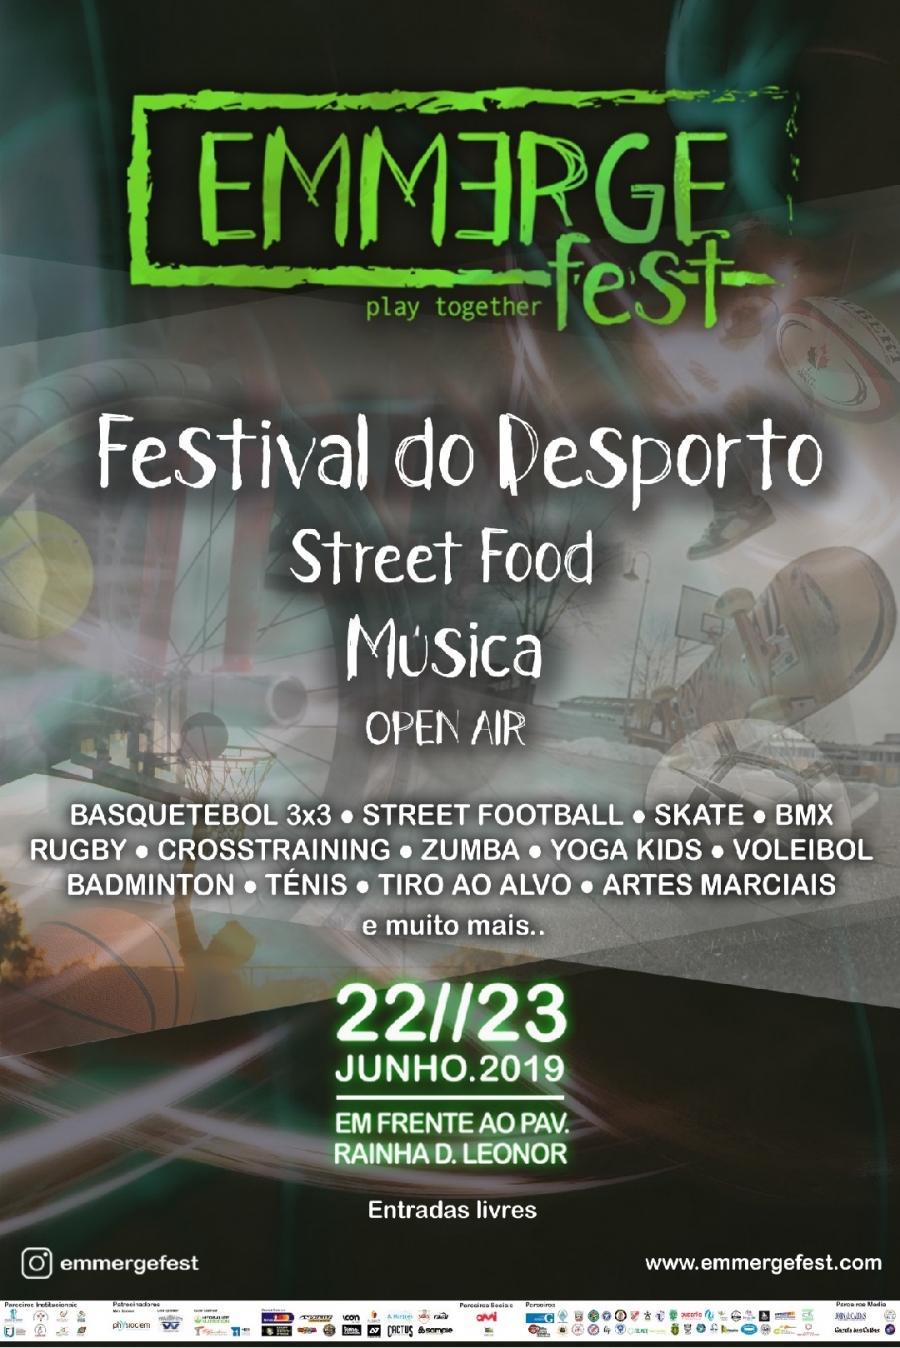 EMMERGE FEST - FESTIVAL DO DESPORTO